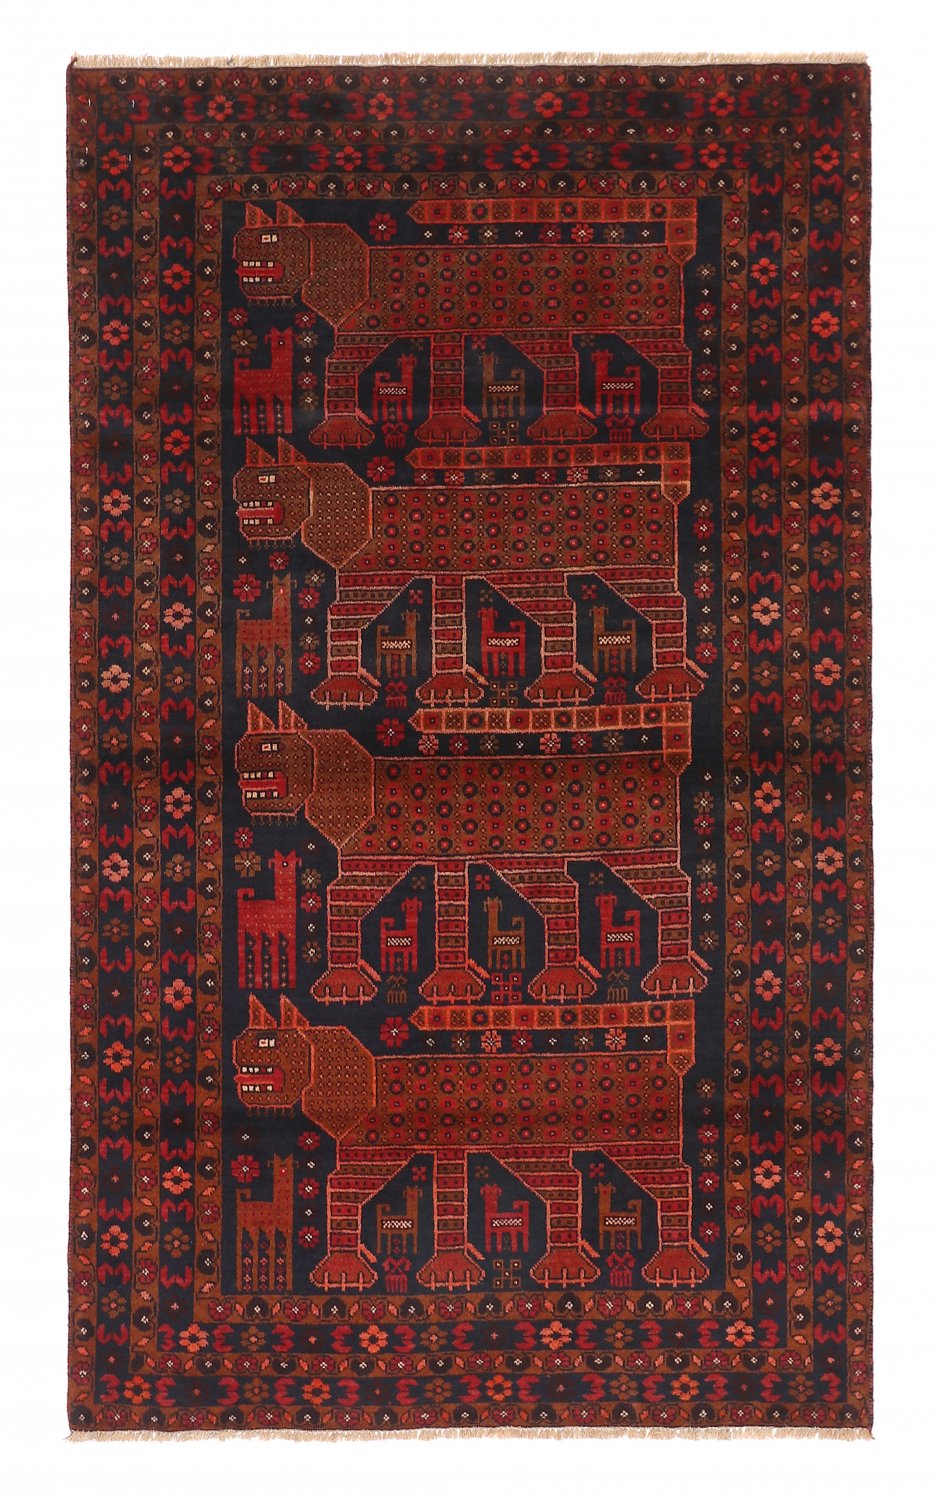 Kilim rug Persian Baluchi 197 x 116 cm